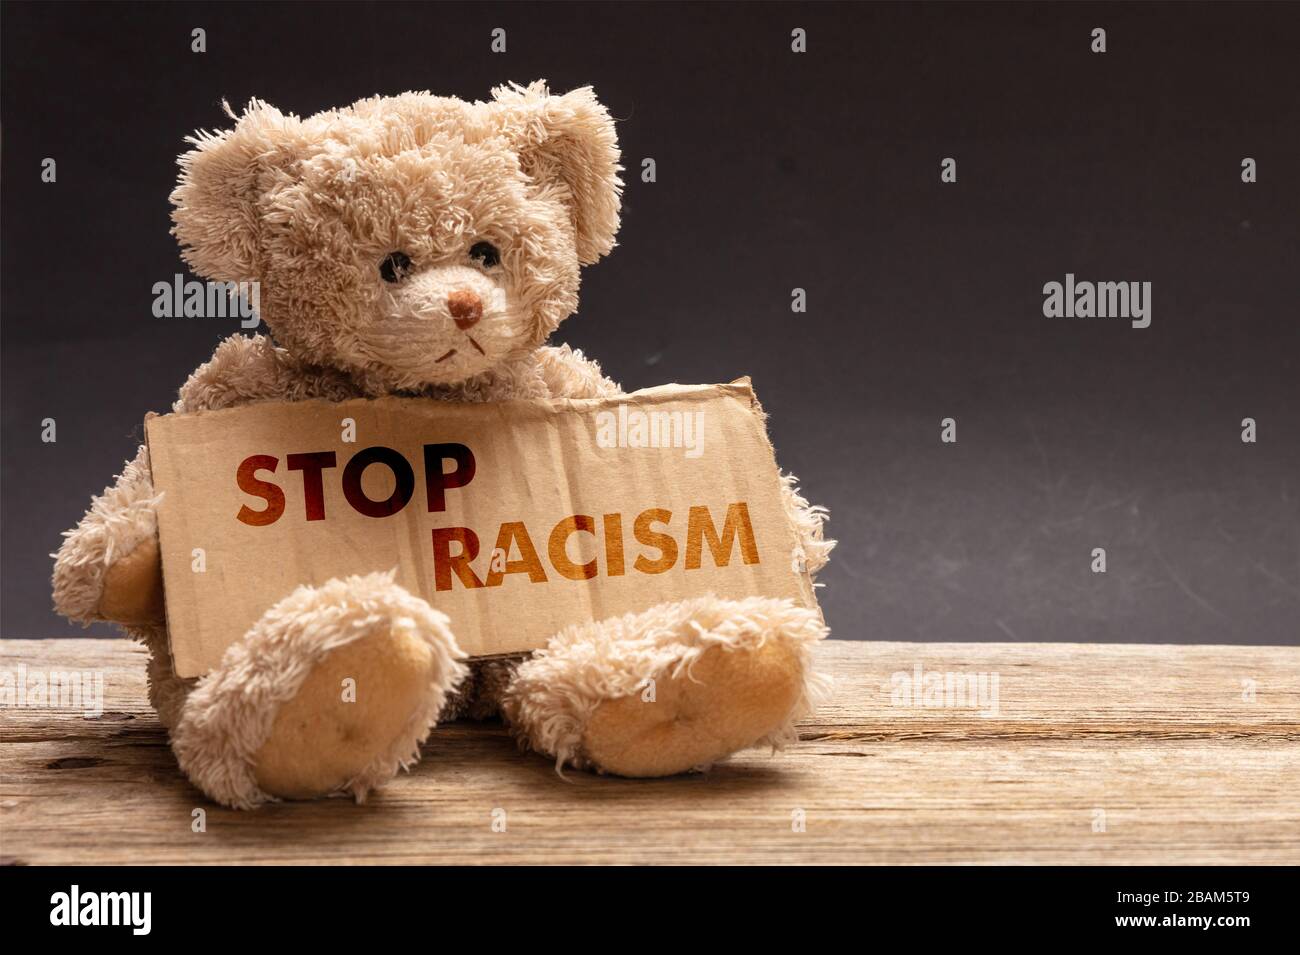 Stoppen Sie Rassismus. Arme obdachlose Kinder betteln. Teddybär, der ein Pappschild hält. Nein zur Rassismus-Botschaft Stockfoto